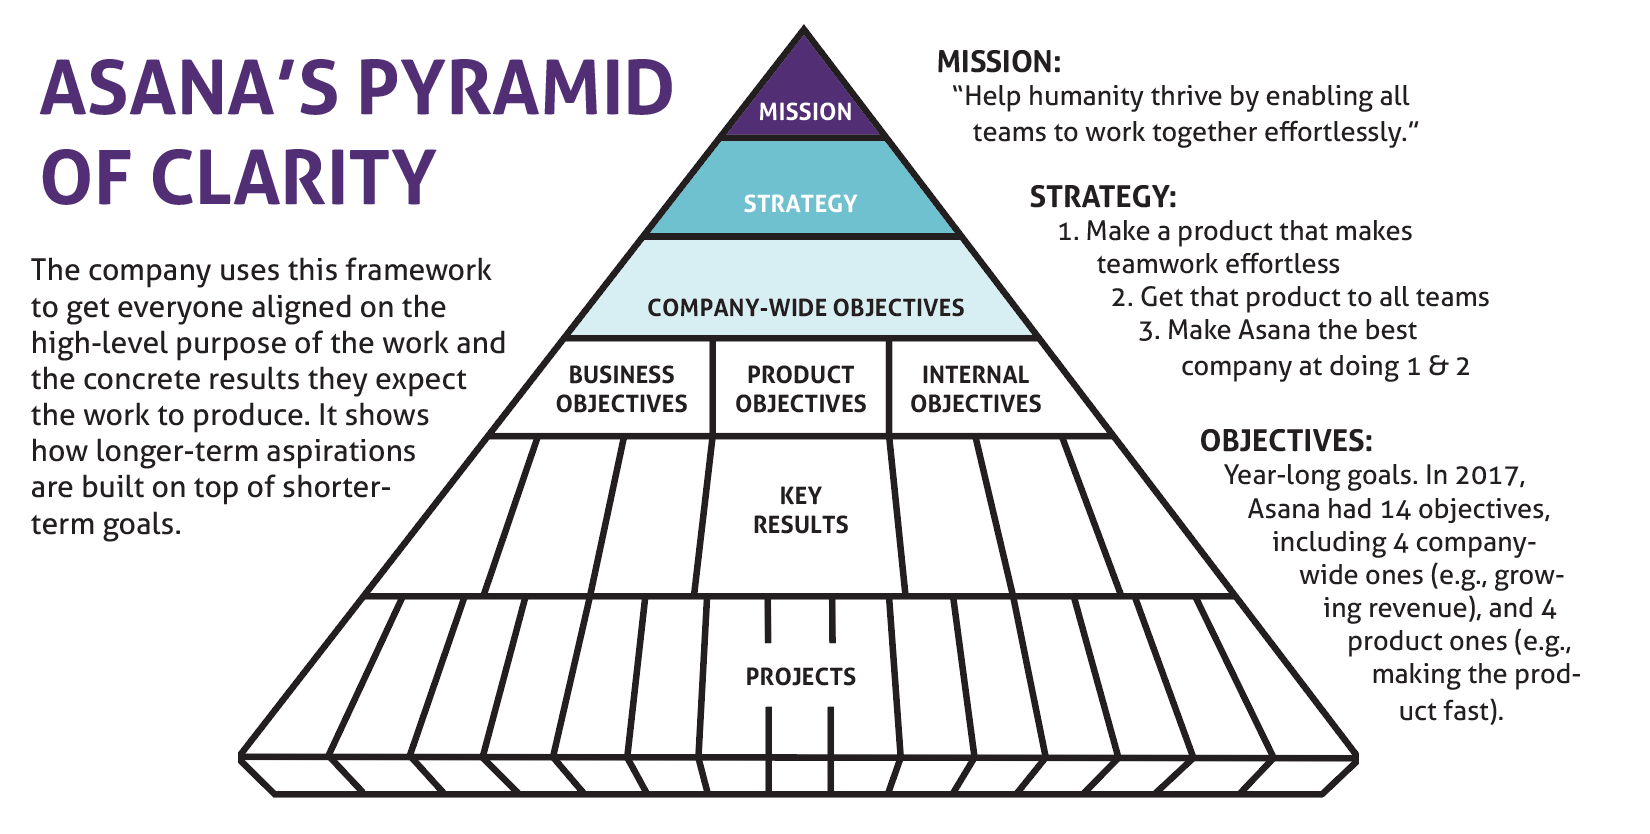 Asana's Pyramid of Clarity